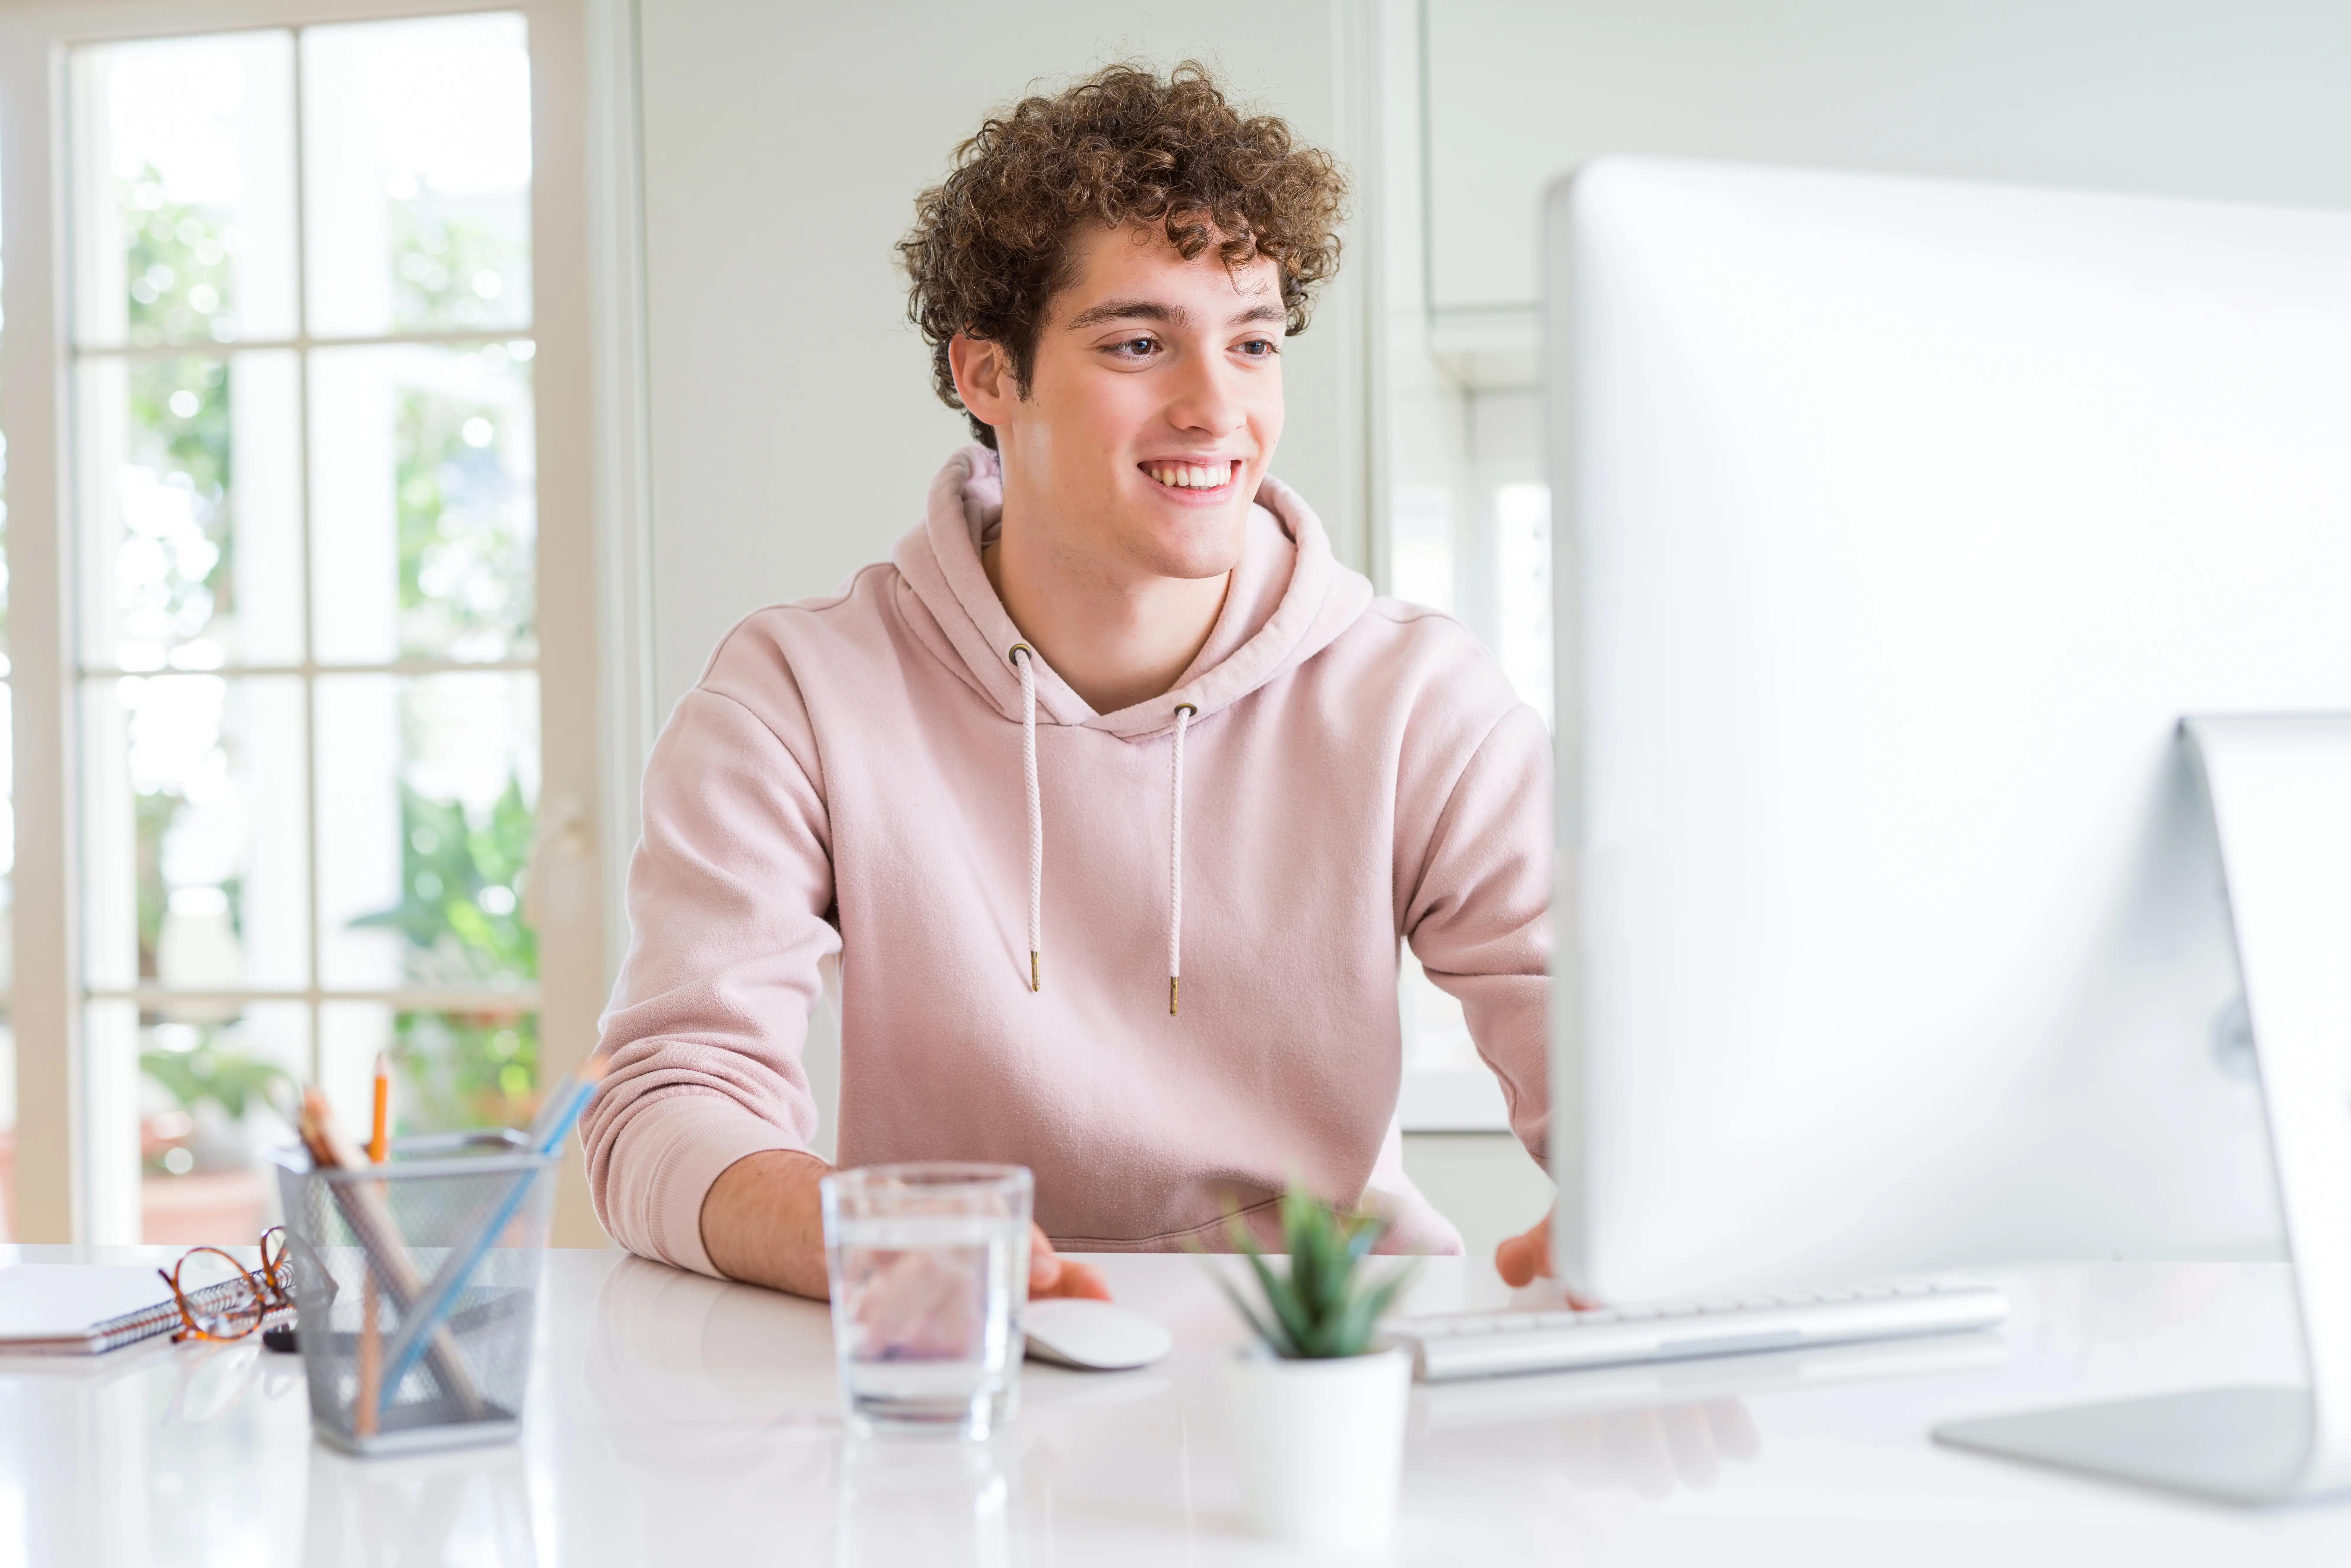 Młody chłopak siedzi przy komputerze, rozmawia online. Jest ubrany w różową bluzę.